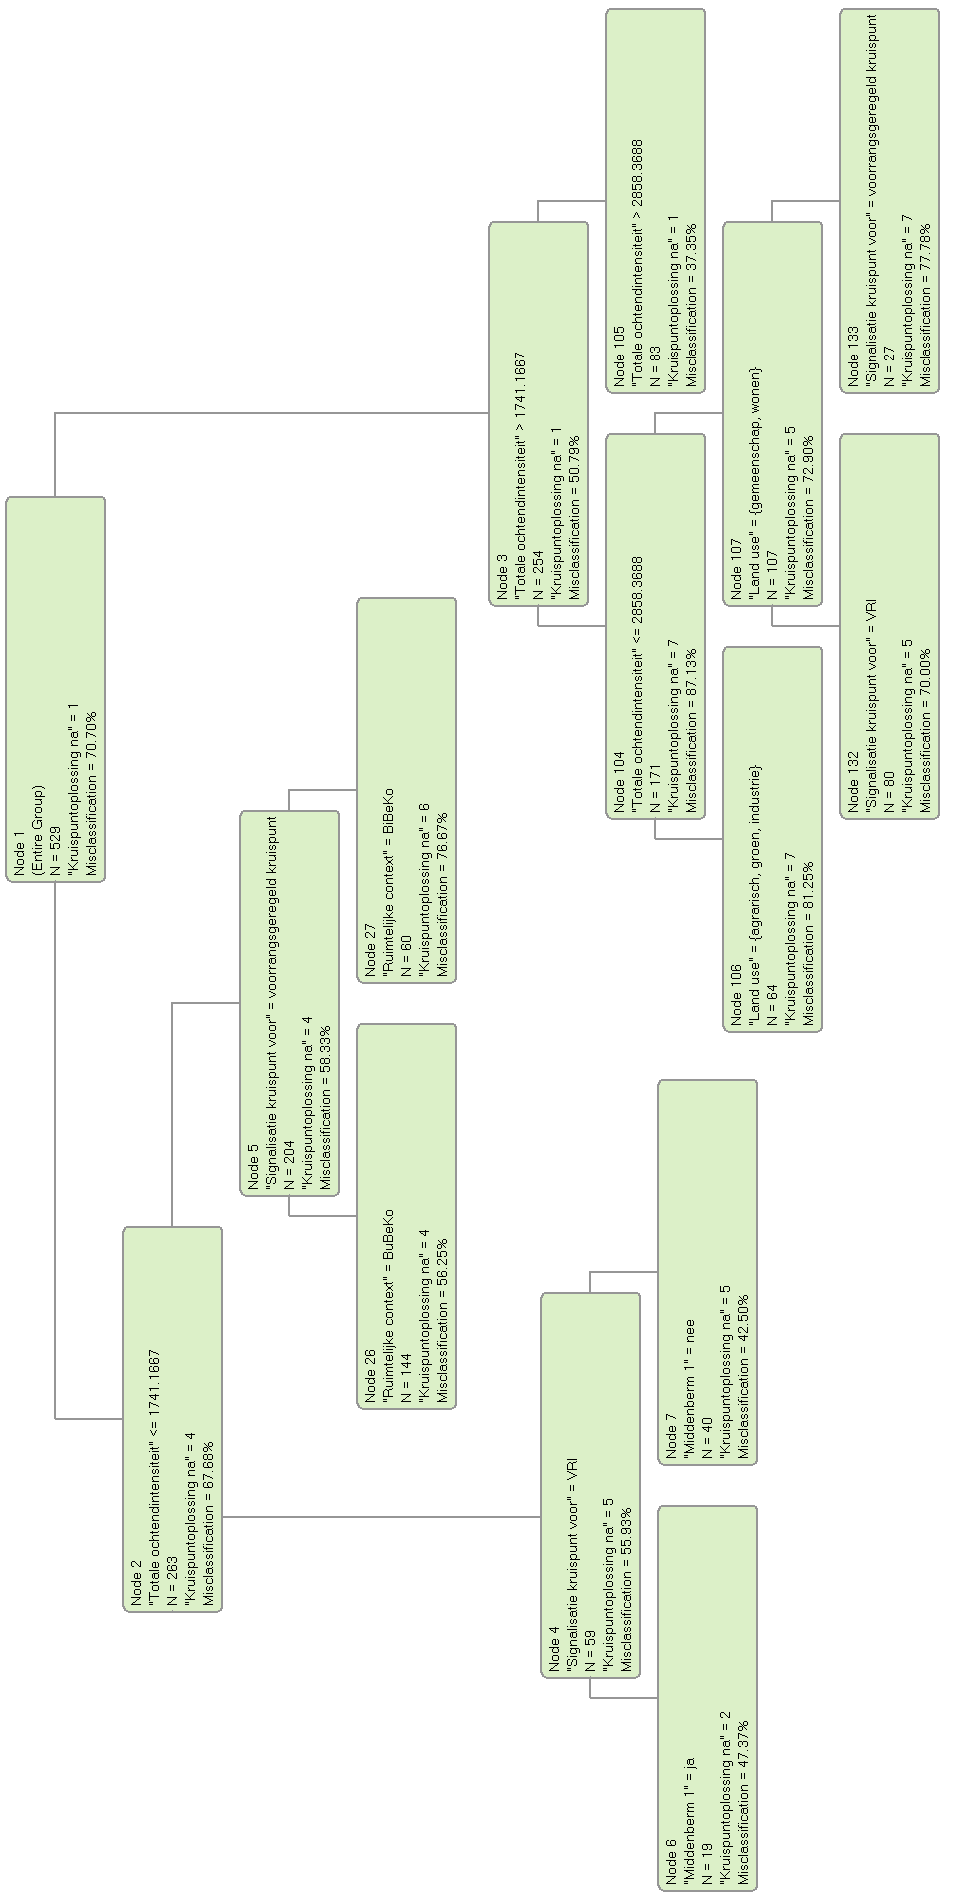 Figuur 27 - Beslissingsboom met optimale grootte